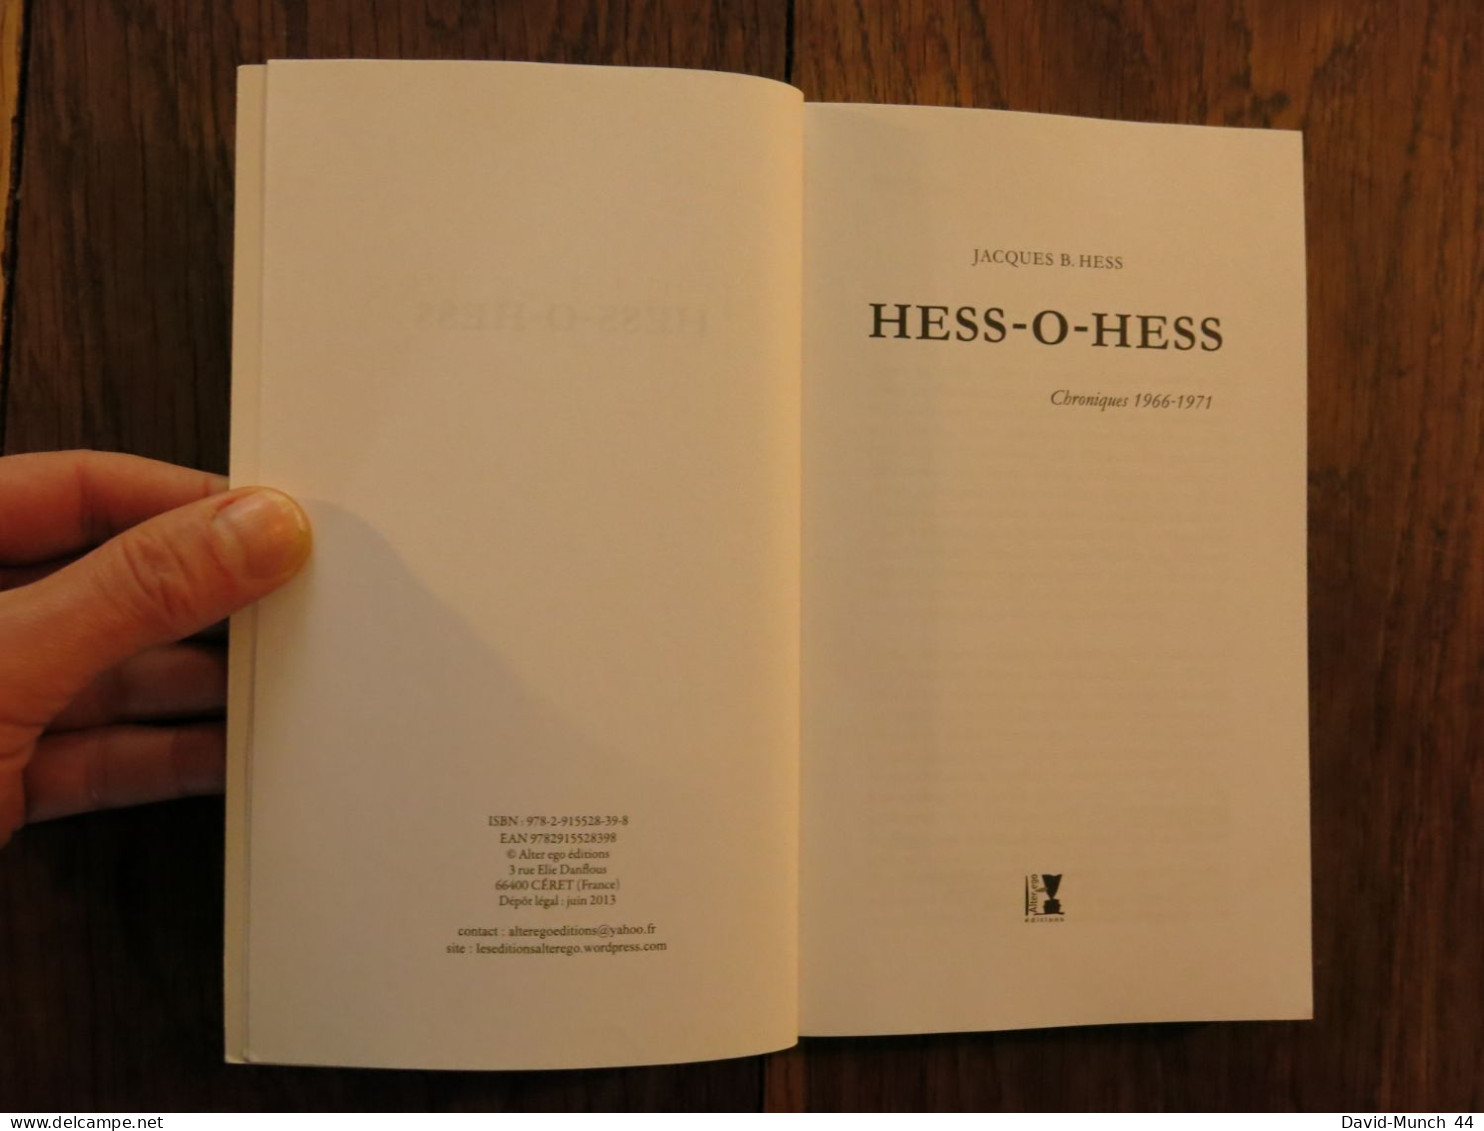 Hess-O-Hess, Chroniques 1966-1971 De Jacques B. Hess. Alter Ego éditions, Jazz Impressions. 2013 - Música